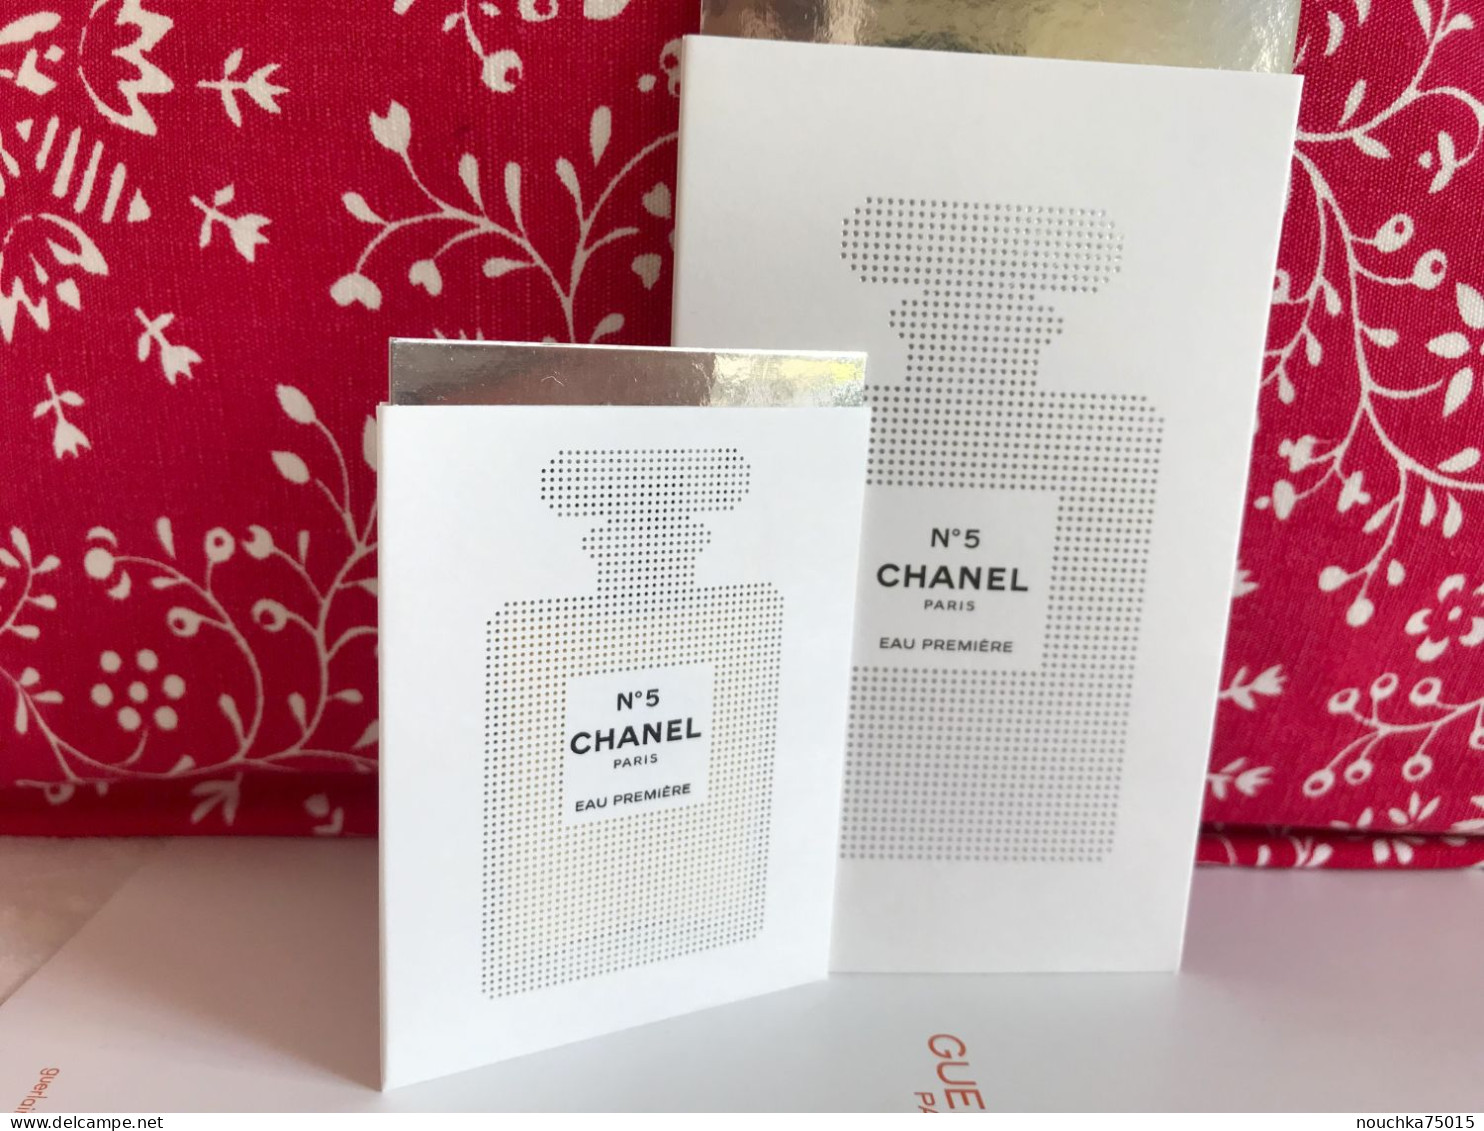 Chanel - N°5 Eau première, lot de deux cartes